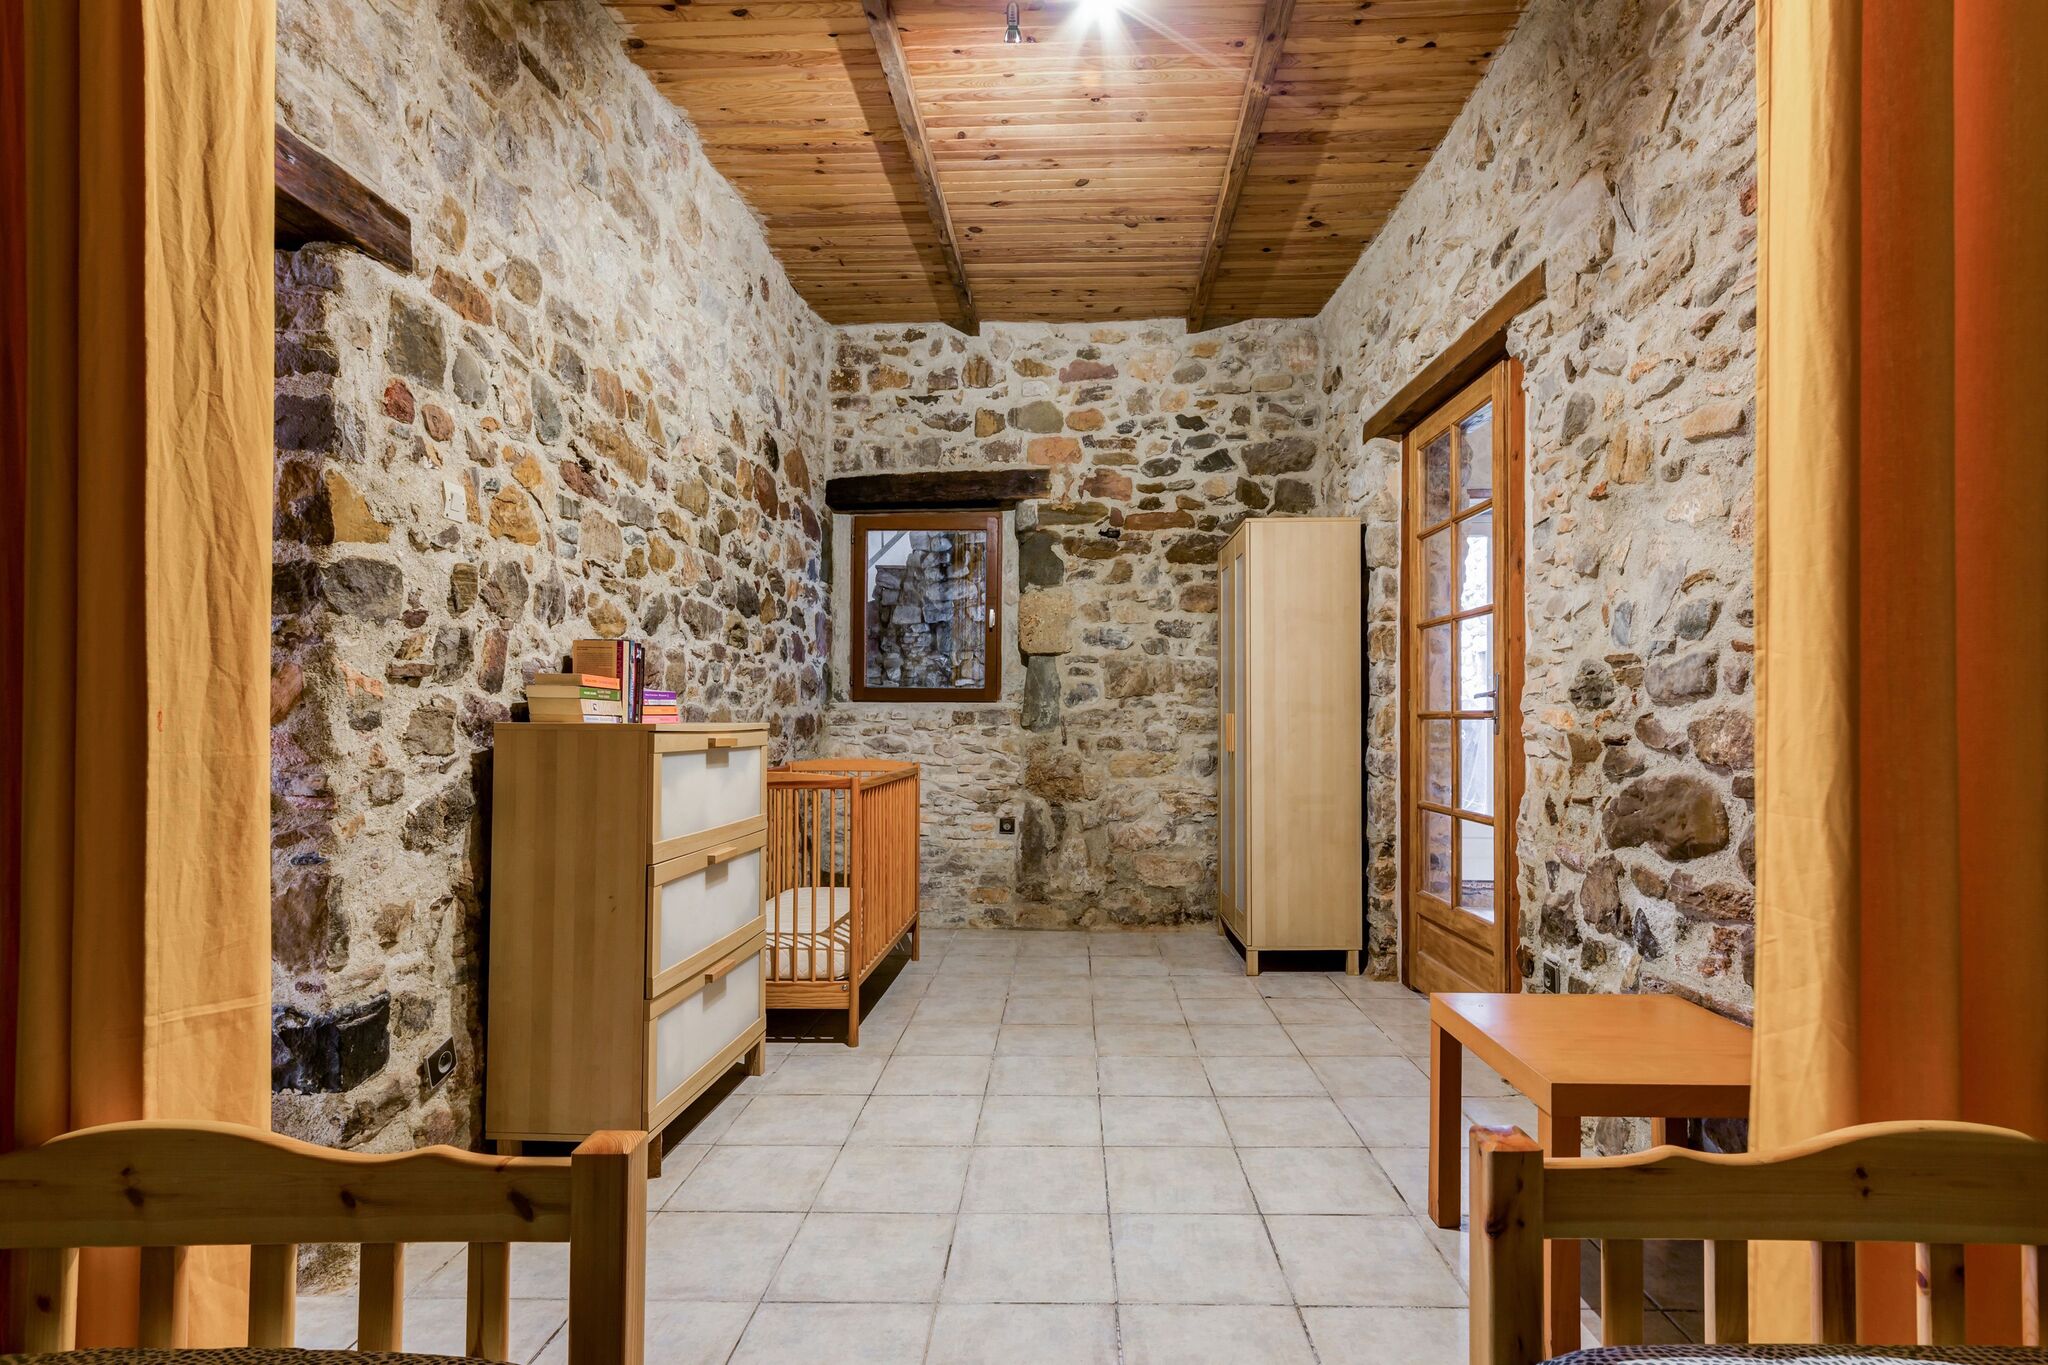 Bel appartement dans village historique près de la rivière de Bize-Minervois